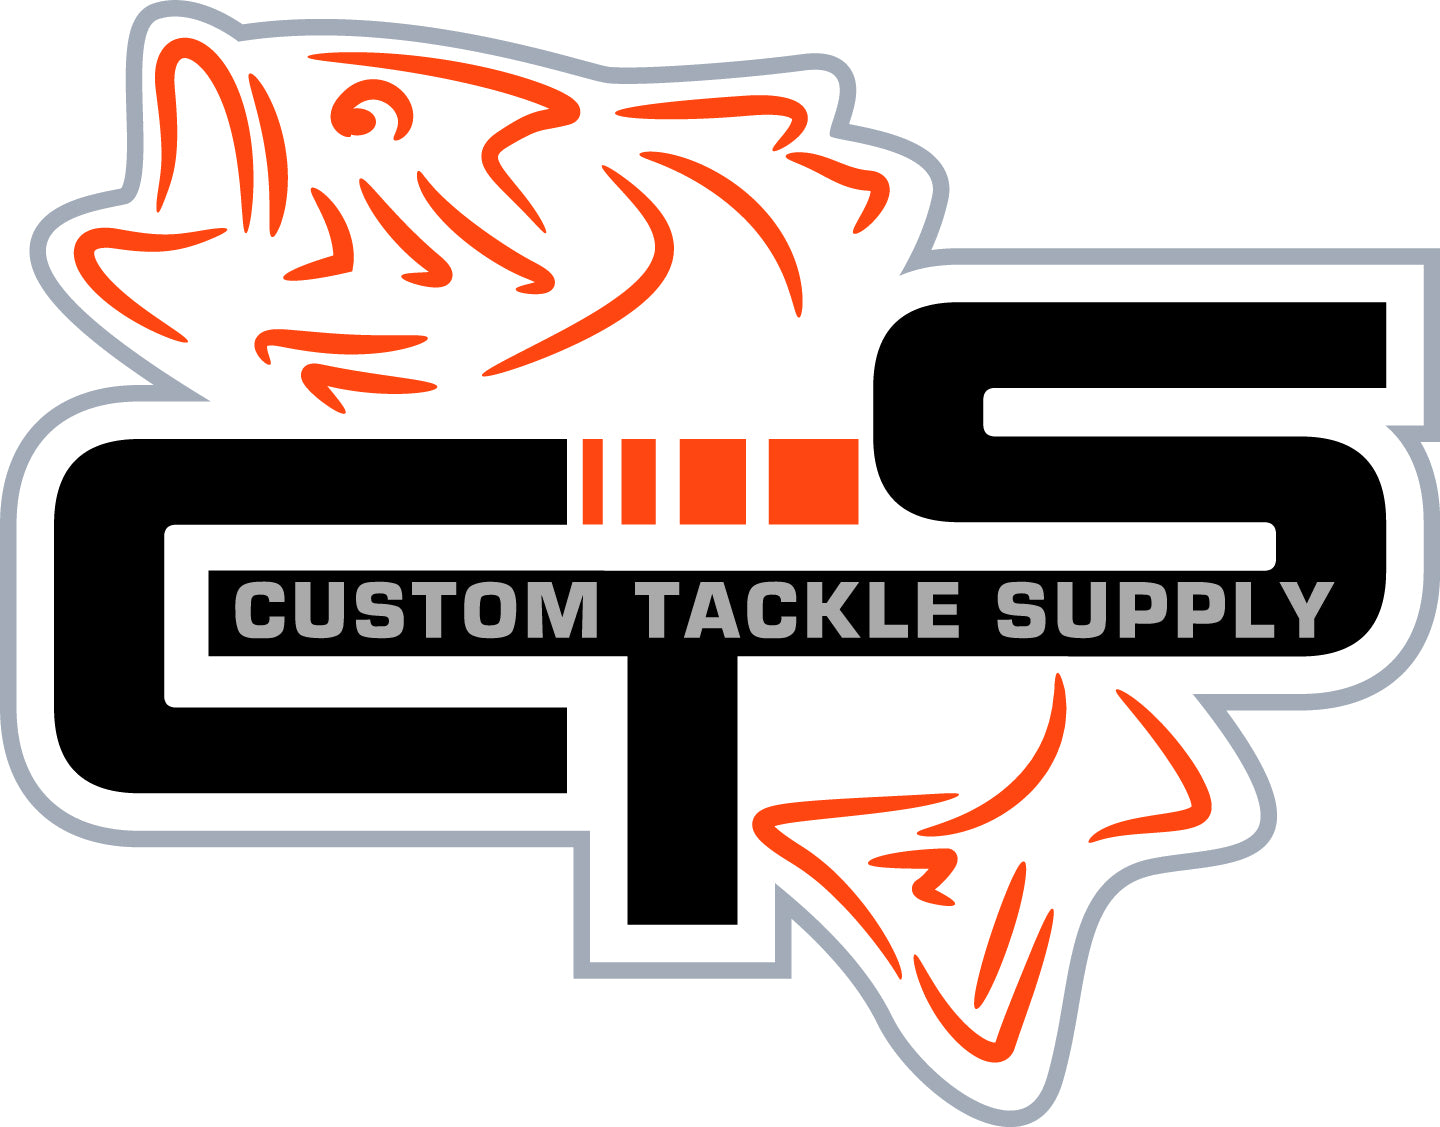 Custom Tackle Supply – Custom Tackle Supply